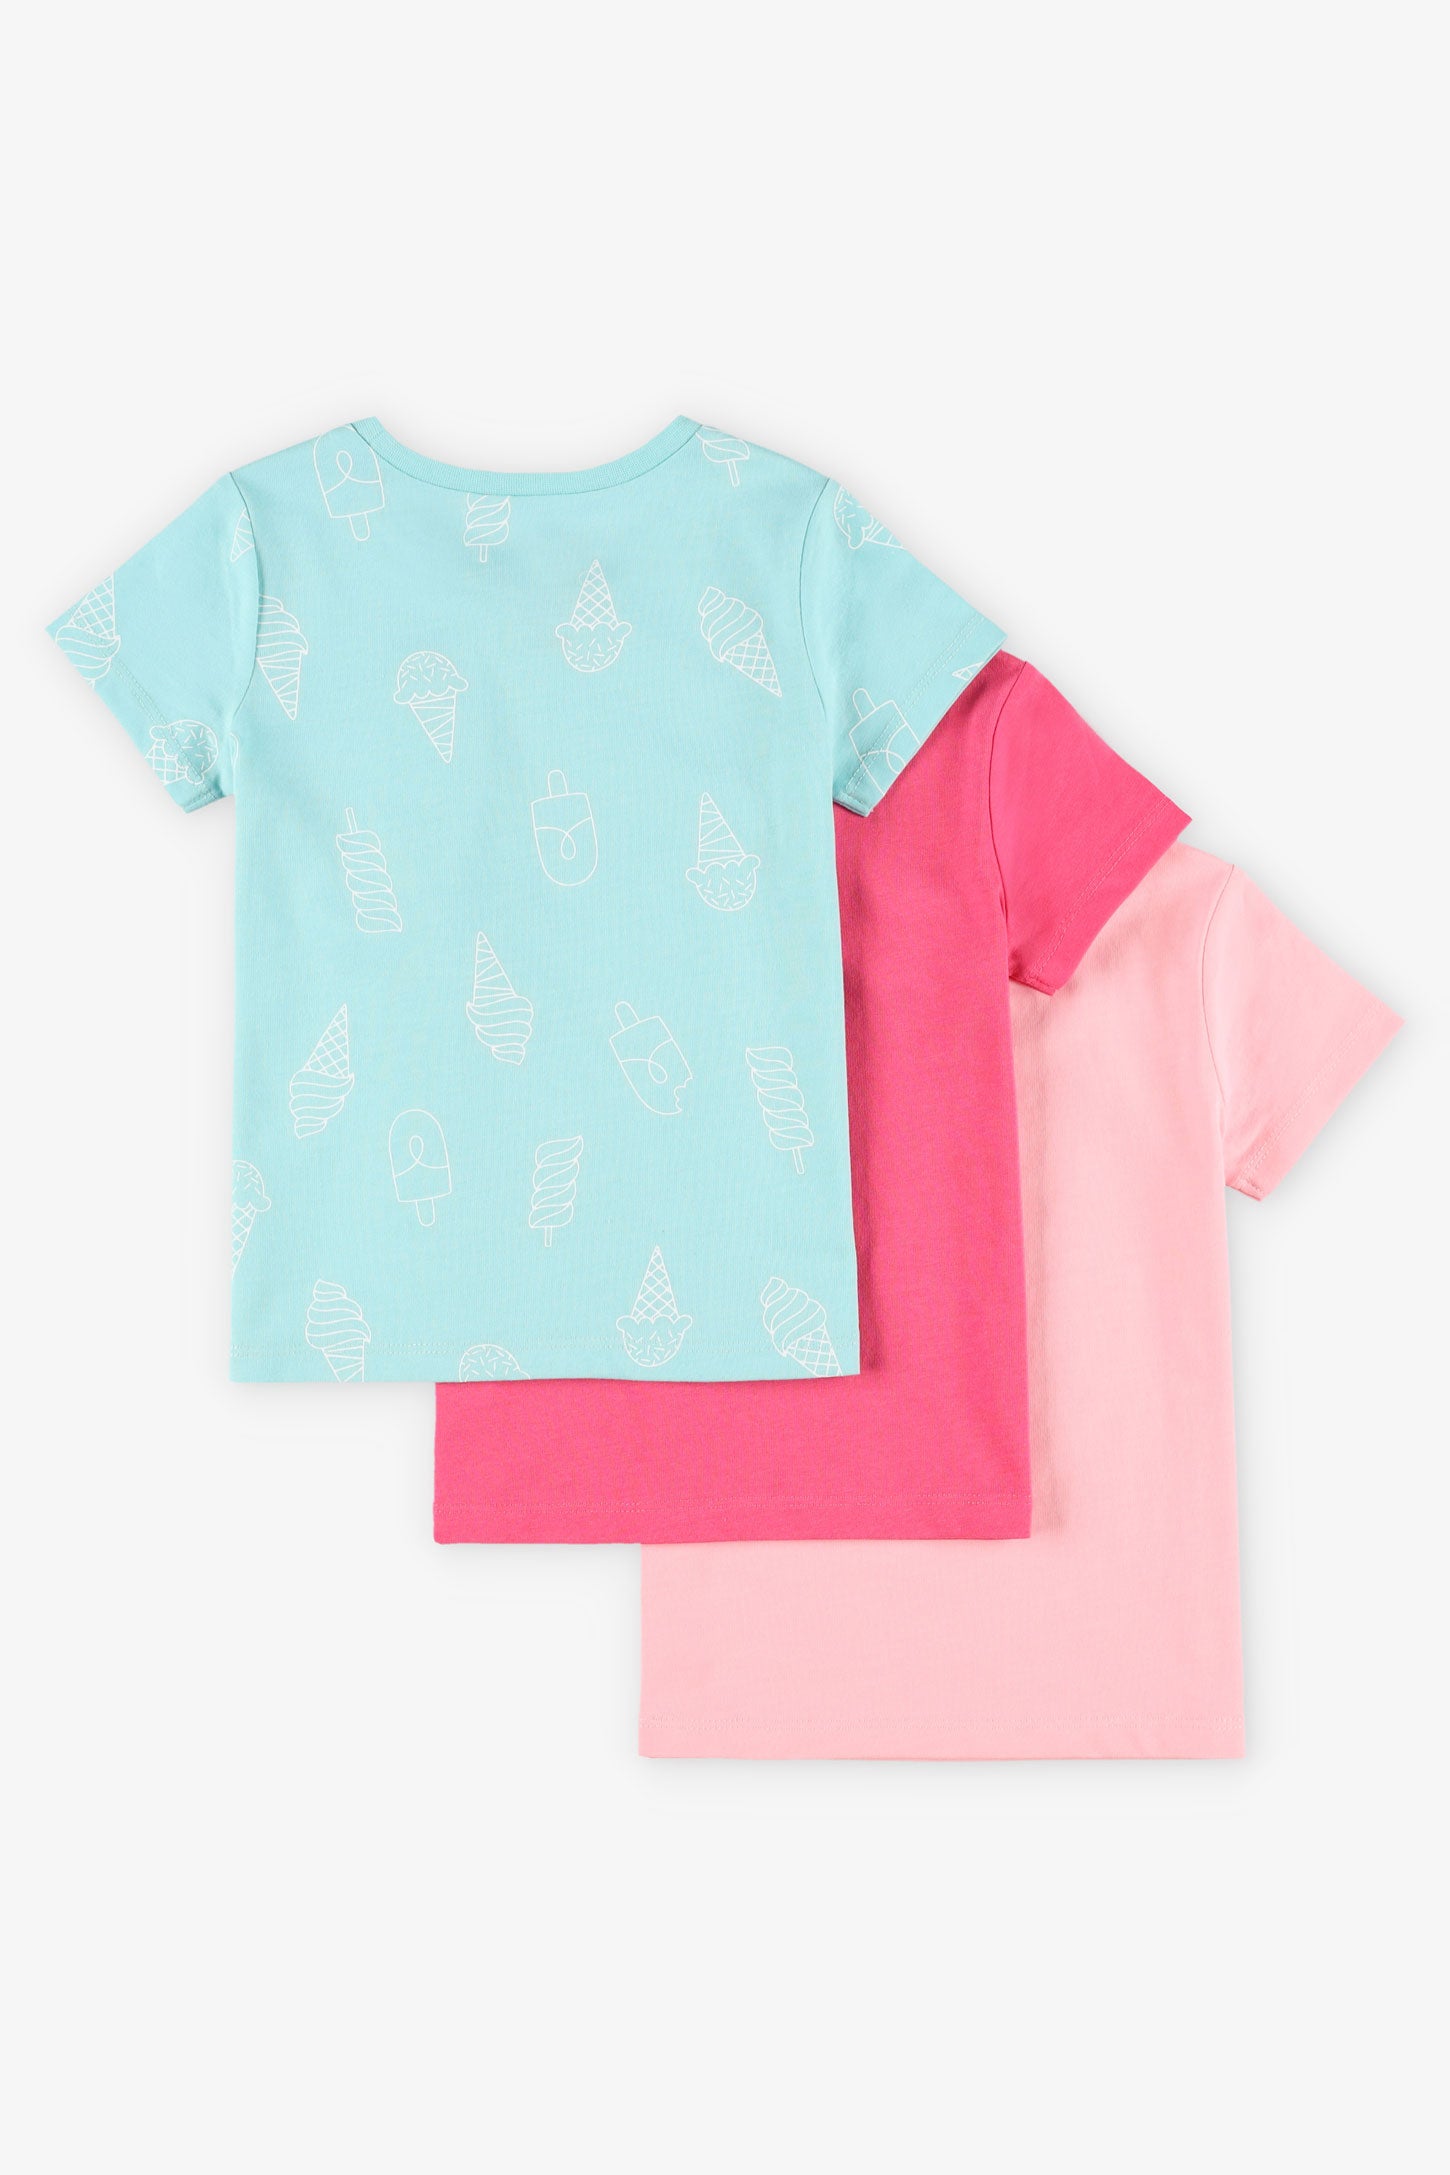 Prix pop, Lot de 3 t-shirts en coton - Bébé fille && ROSE